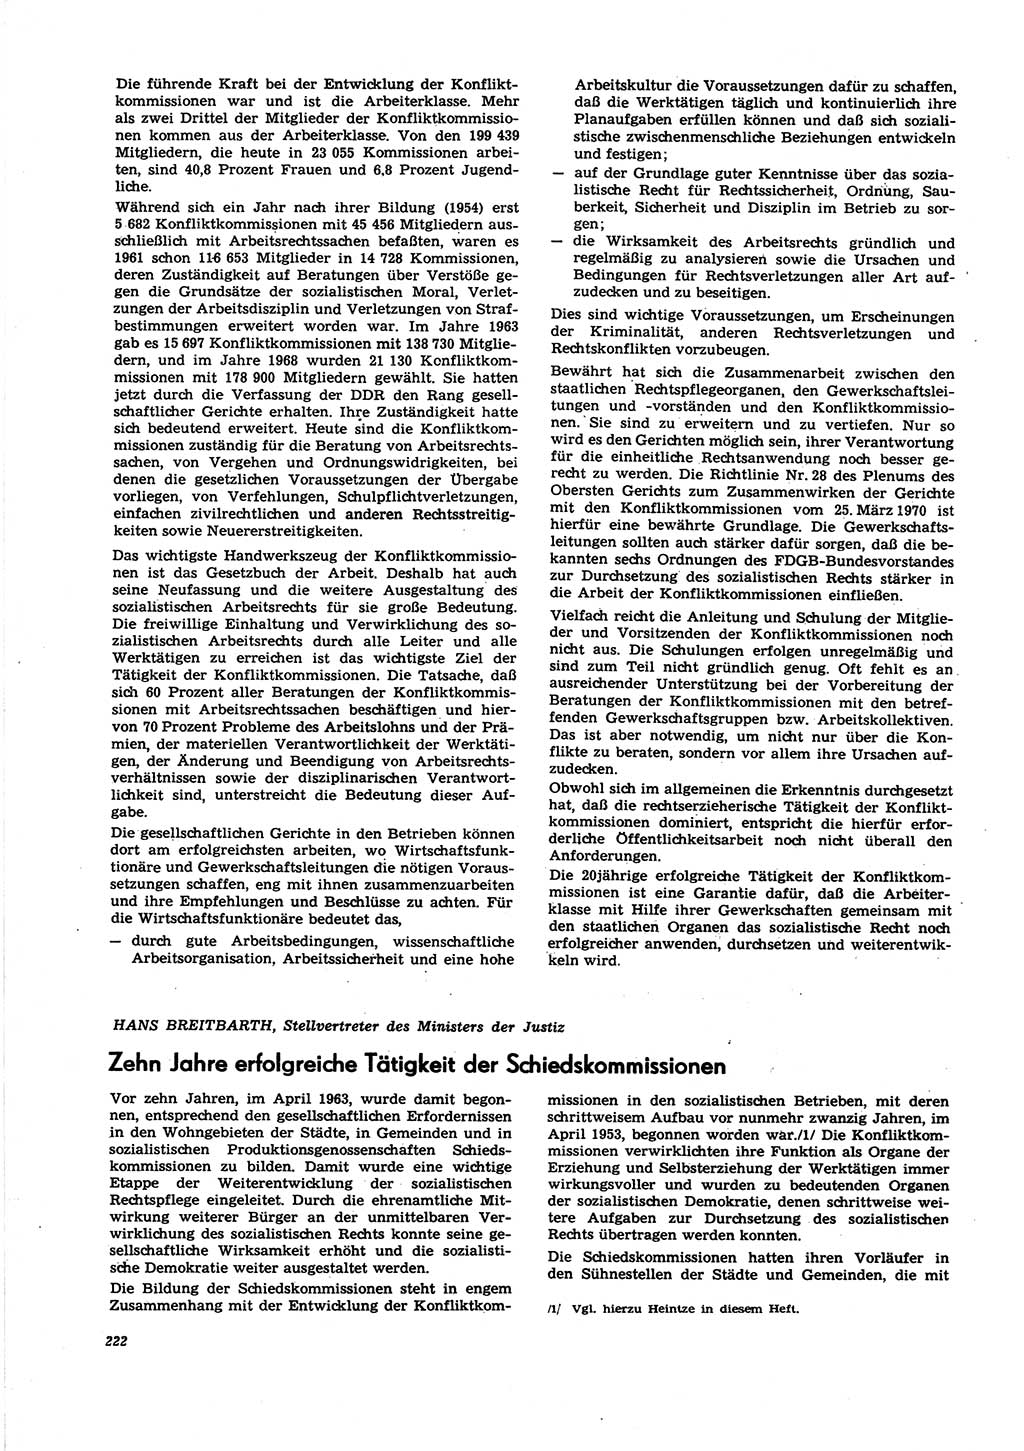 Neue Justiz (NJ), Zeitschrift für Recht und Rechtswissenschaft [Deutsche Demokratische Republik (DDR)], 27. Jahrgang 1973, Seite 222 (NJ DDR 1973, S. 222)